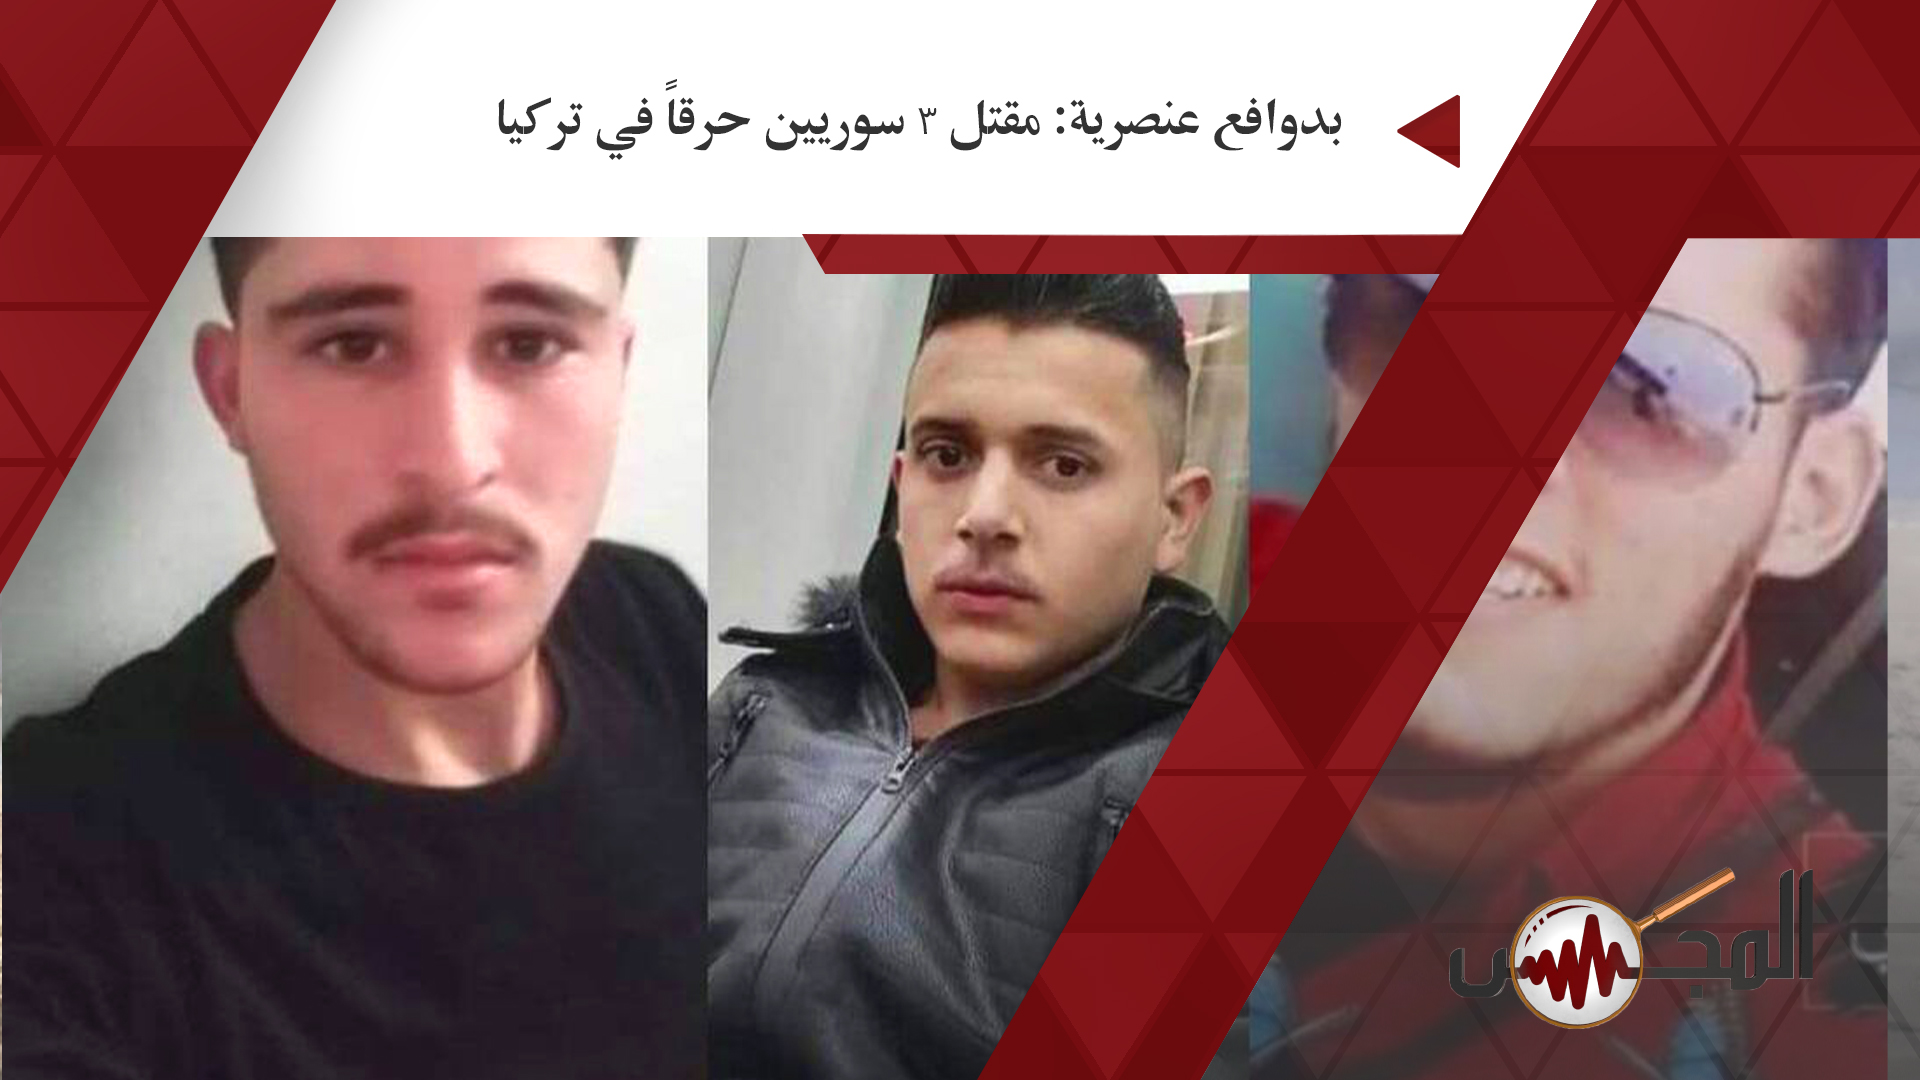 بدوافع عنصرية: مقتل 3 سوريين حرقاً في تركيا